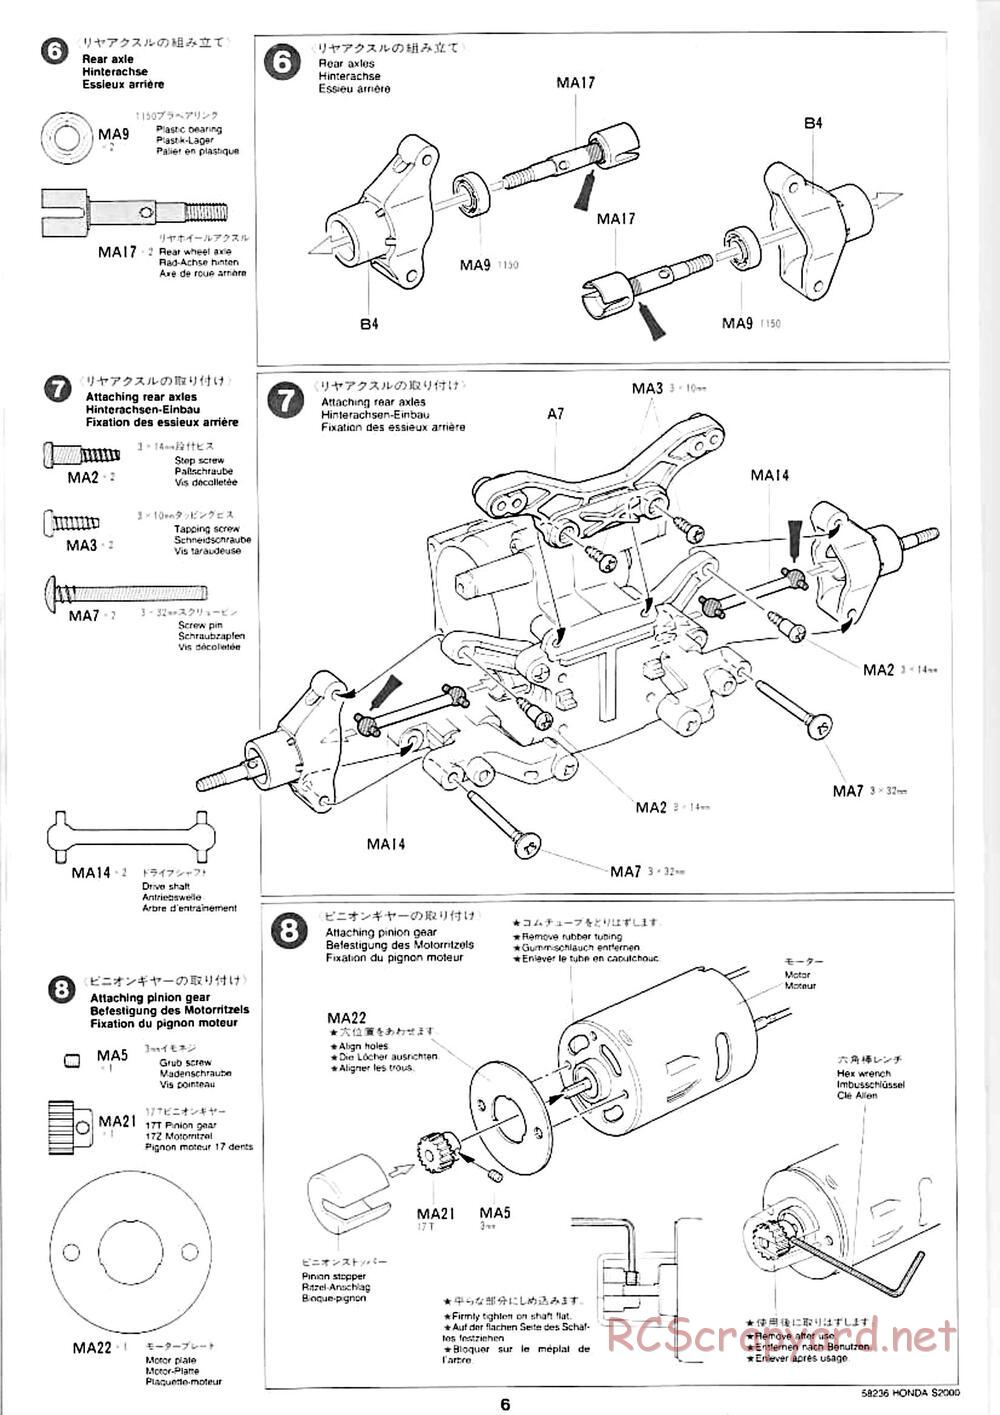 Tamiya - Honda S2000 - M04L Chassis - Manual - Page 4